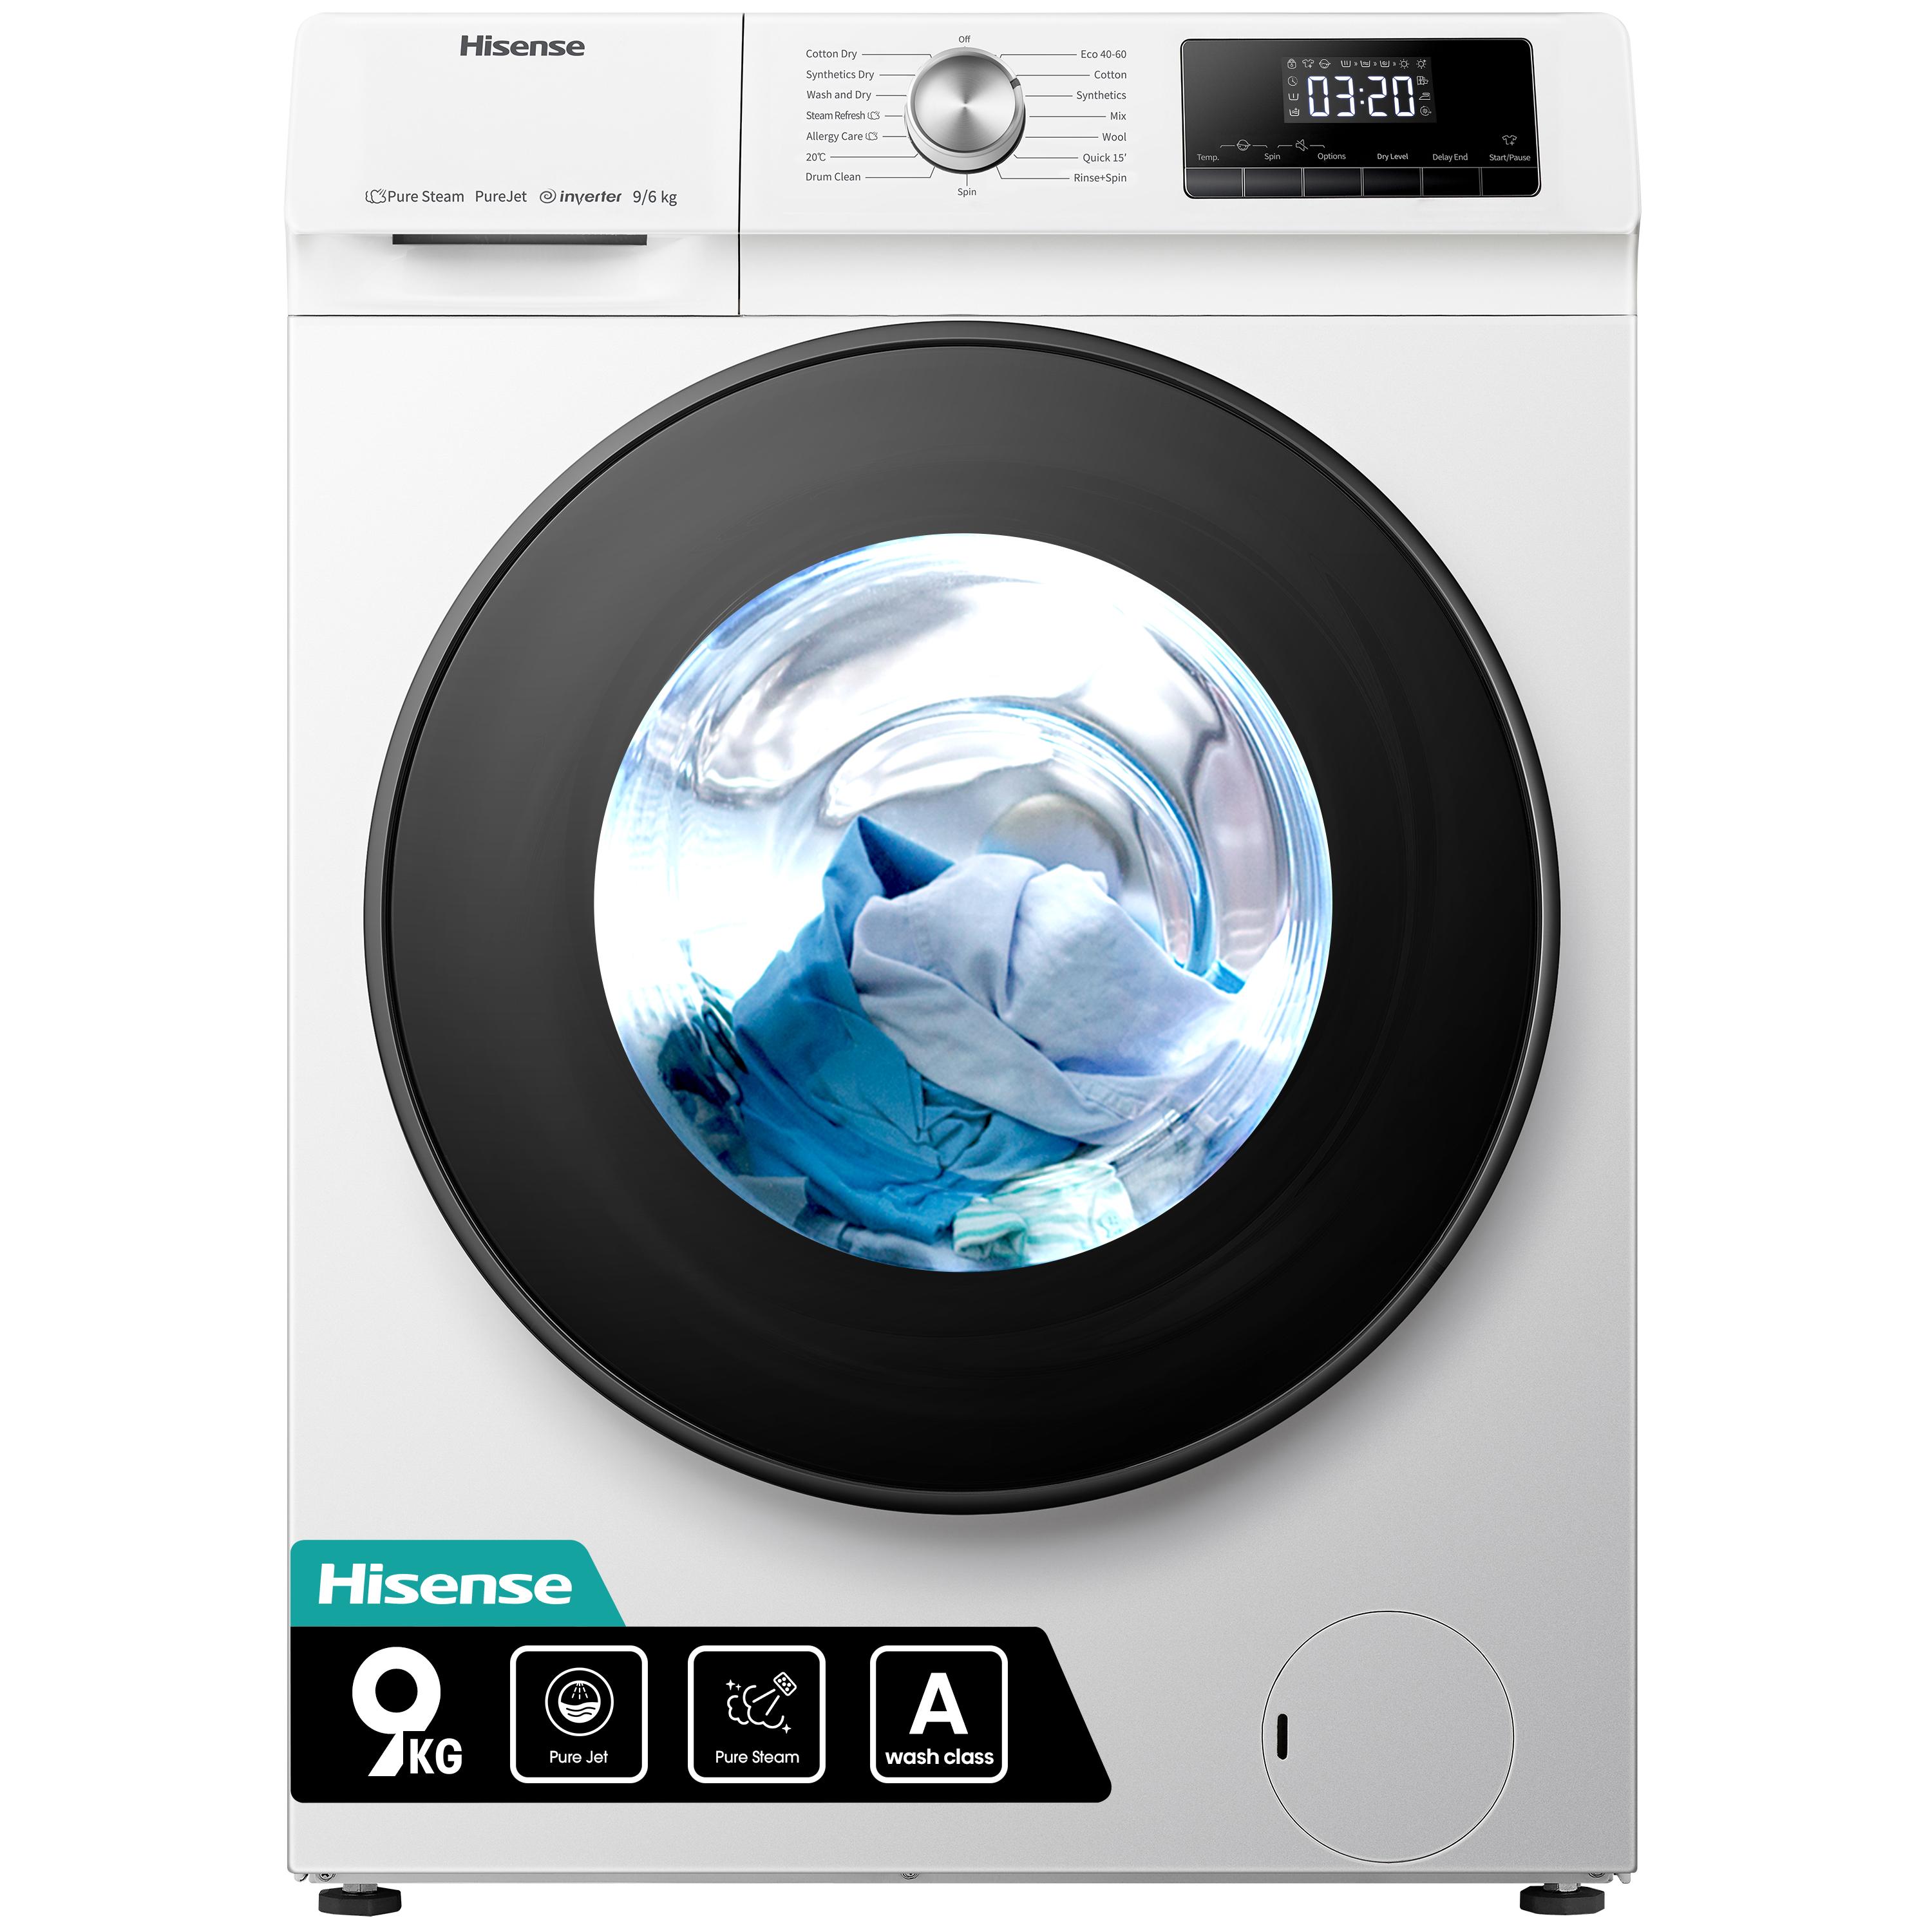 HISENSE QA Series WDQA9014EVJM 9 kg Washer Dryer - White, White